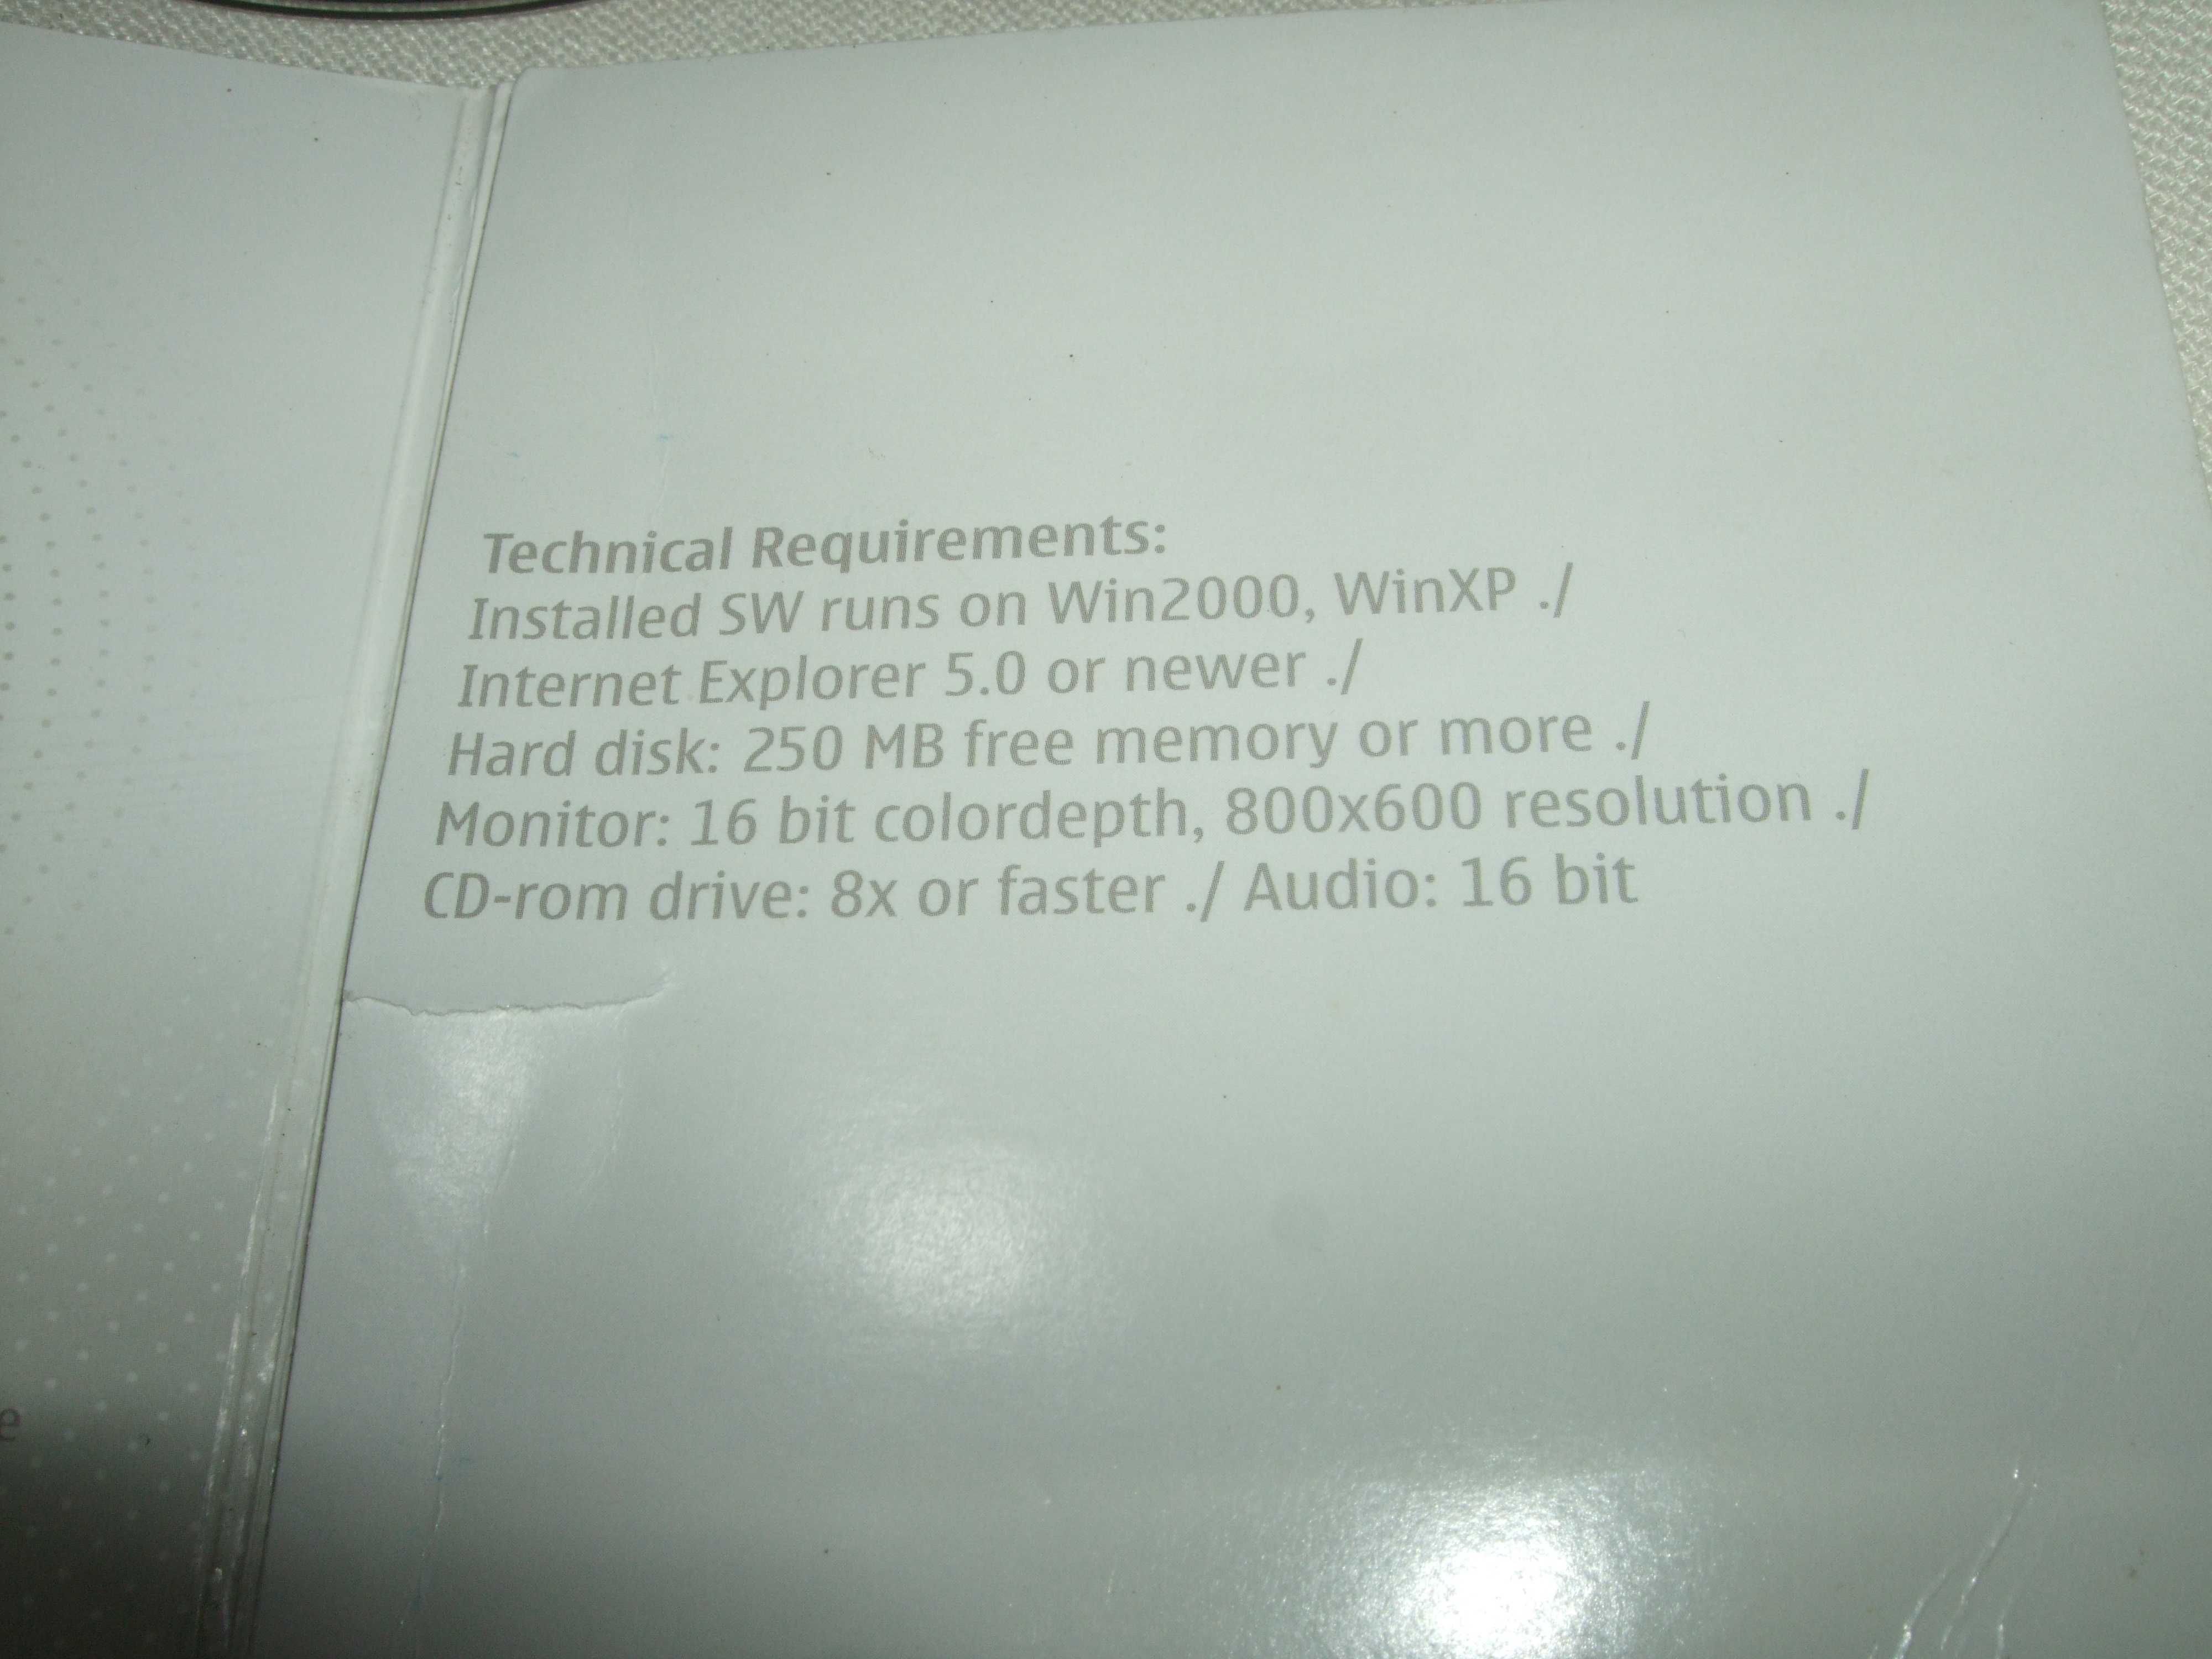 Продам диск CD Nokia 6230